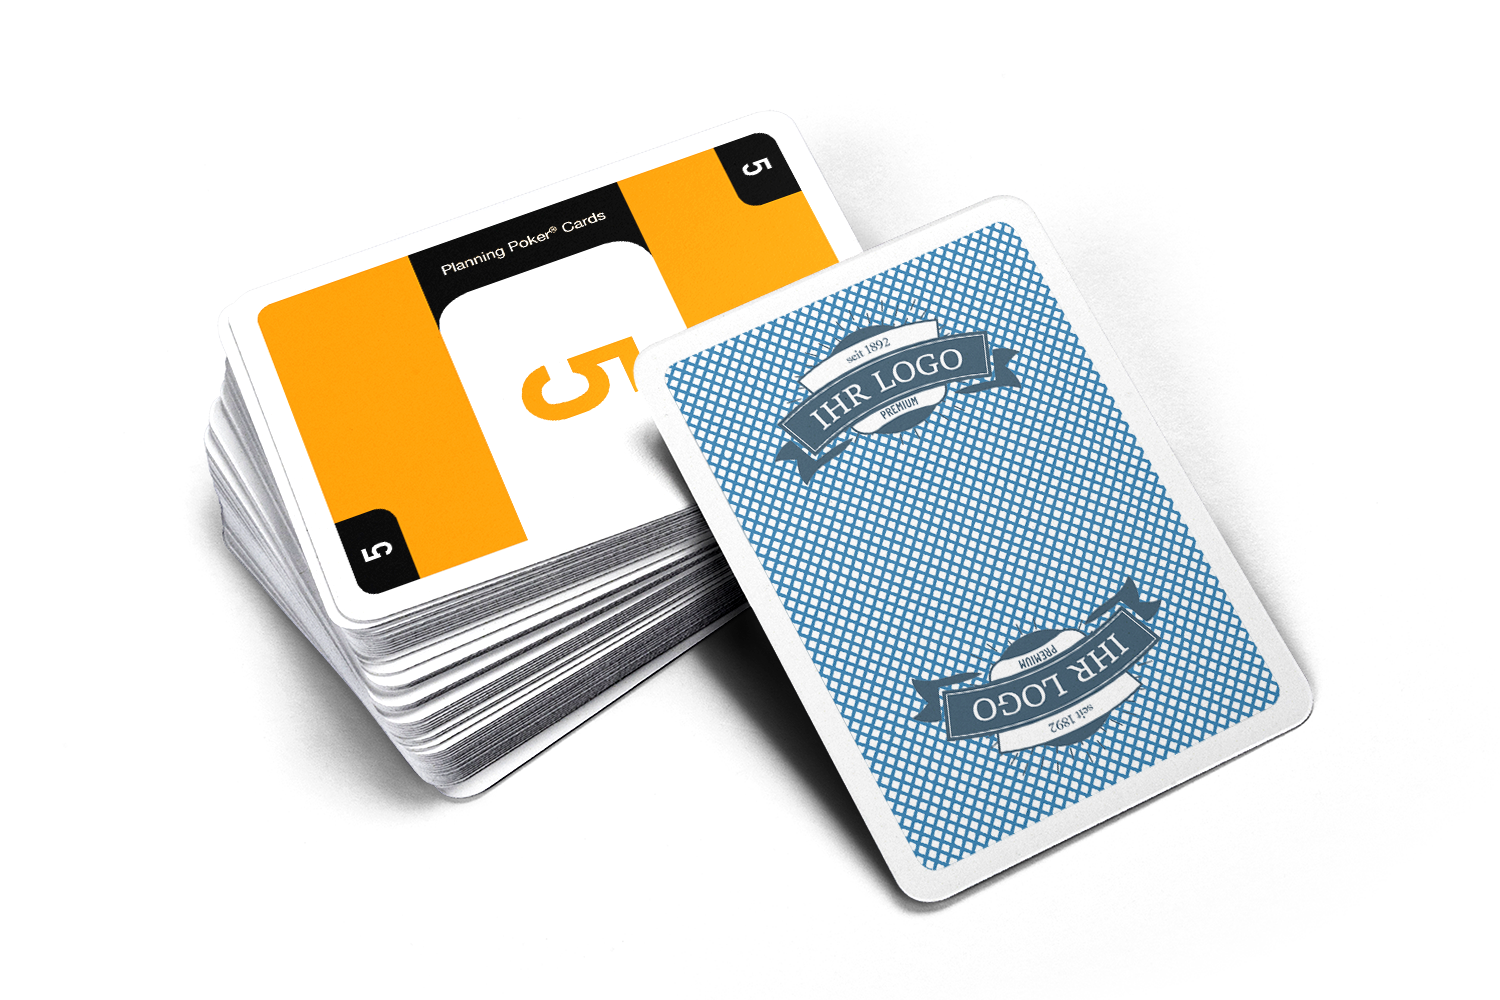 Auf einem Kartenstapel liegt die oberste Karte, eine Planning Poker Karte mit der Zahl 5, aufgedeckt. Angelehnt an den Kartenstapel die Rückseite mit individueller Gestaltung und Logo